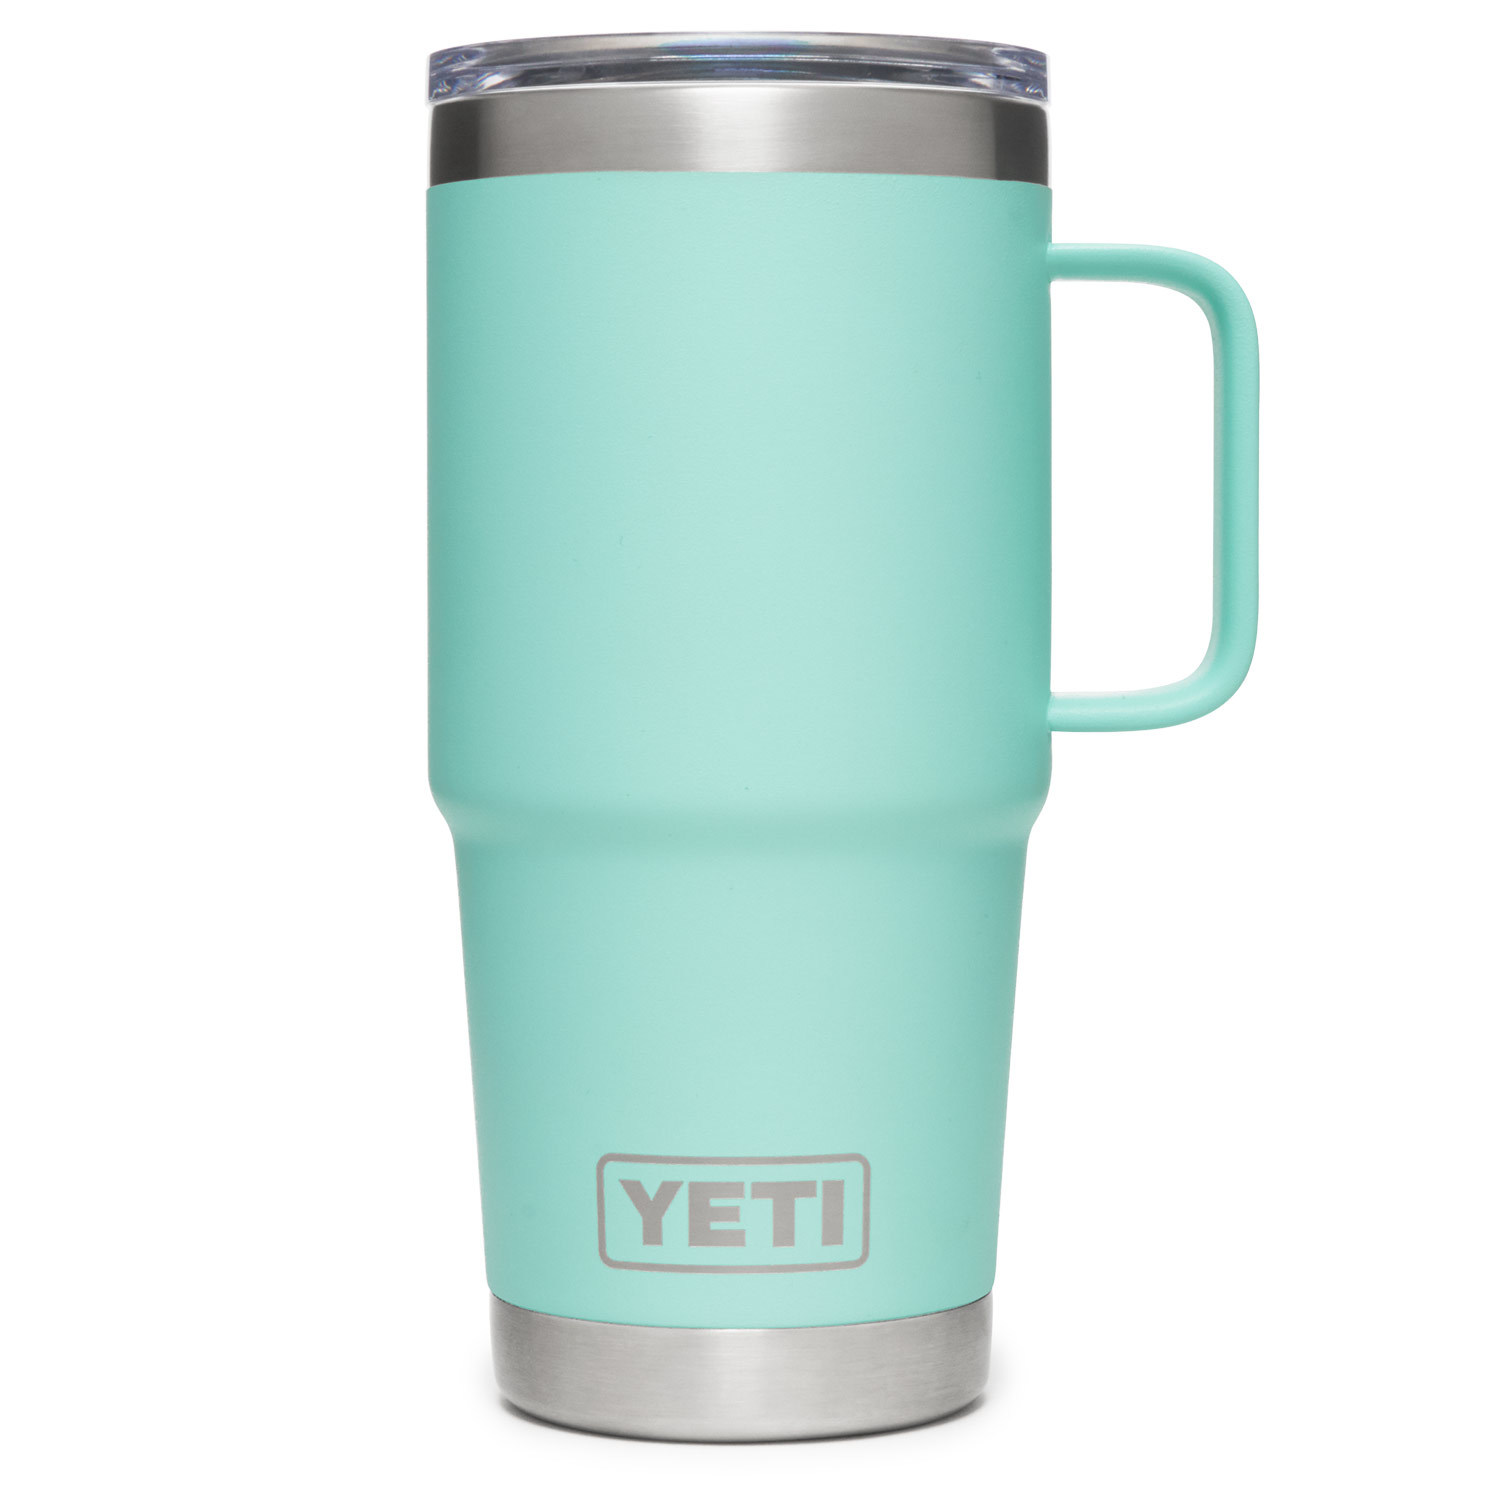 Yeti RAMBLER Series 21071501006 Travel Mug, 20 oz, Strong